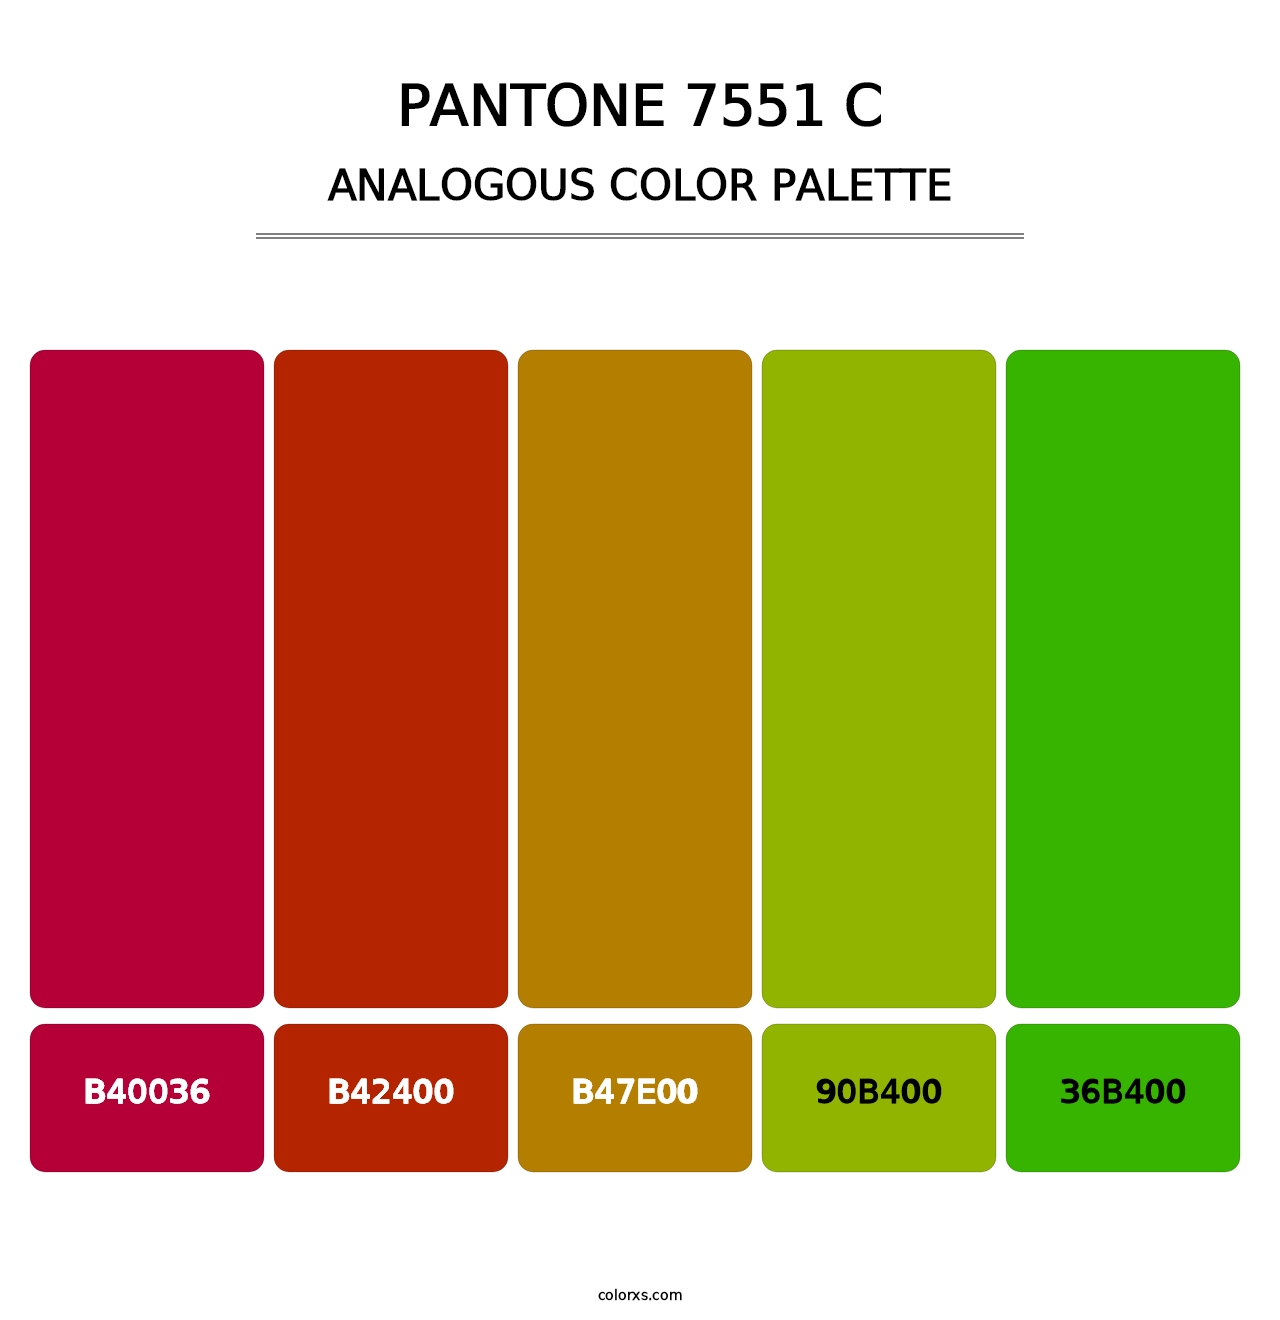 PANTONE 7551 C - Analogous Color Palette